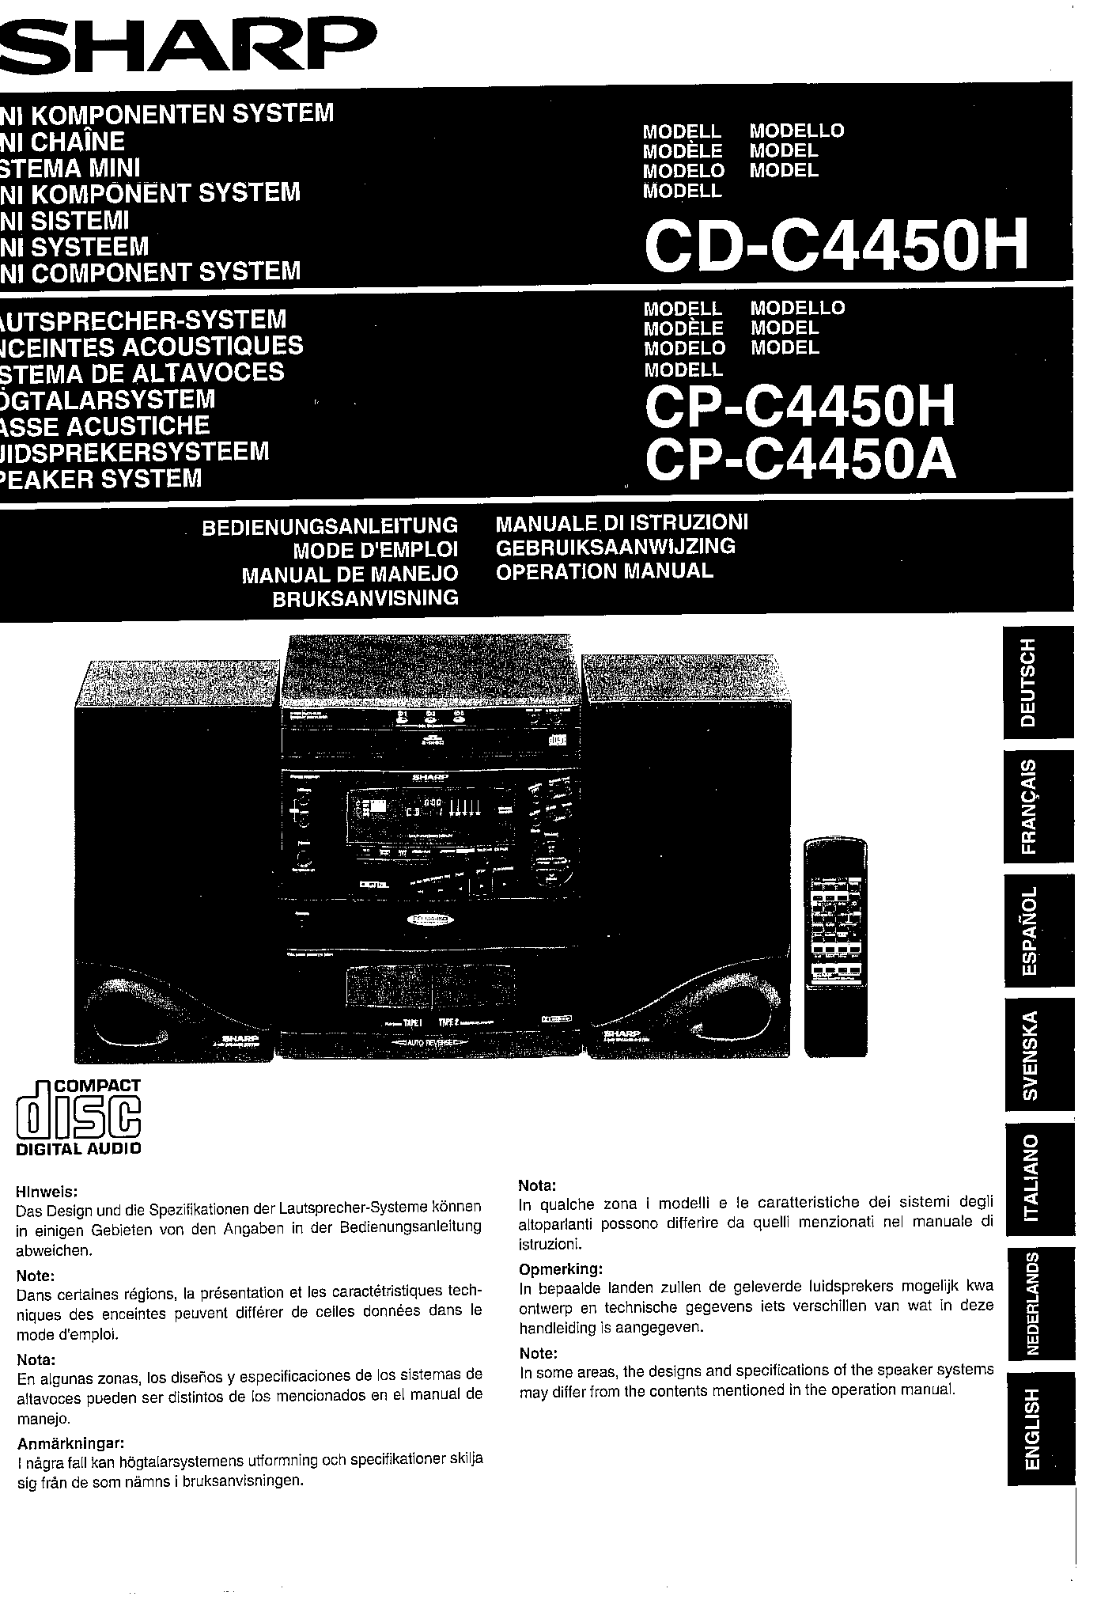 Sharp CP-C4450H, CP-C4450A, CD-C4450H Manual